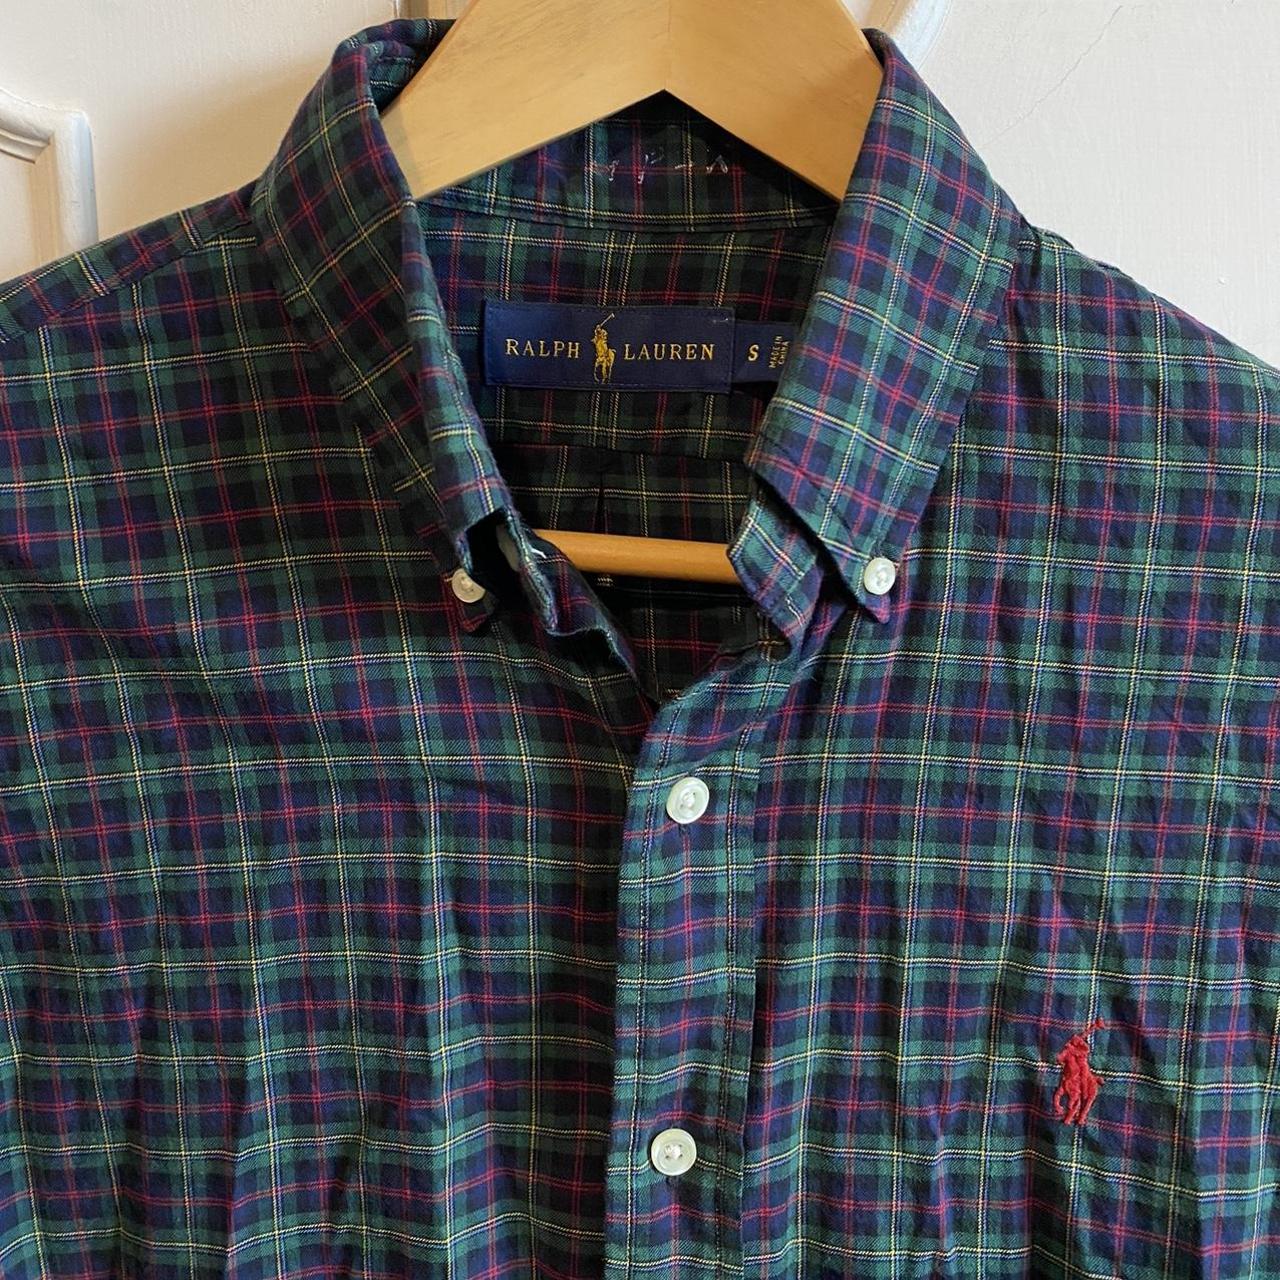 Ralph Lauren plaid shirt Size - S #ralphlauren - Depop